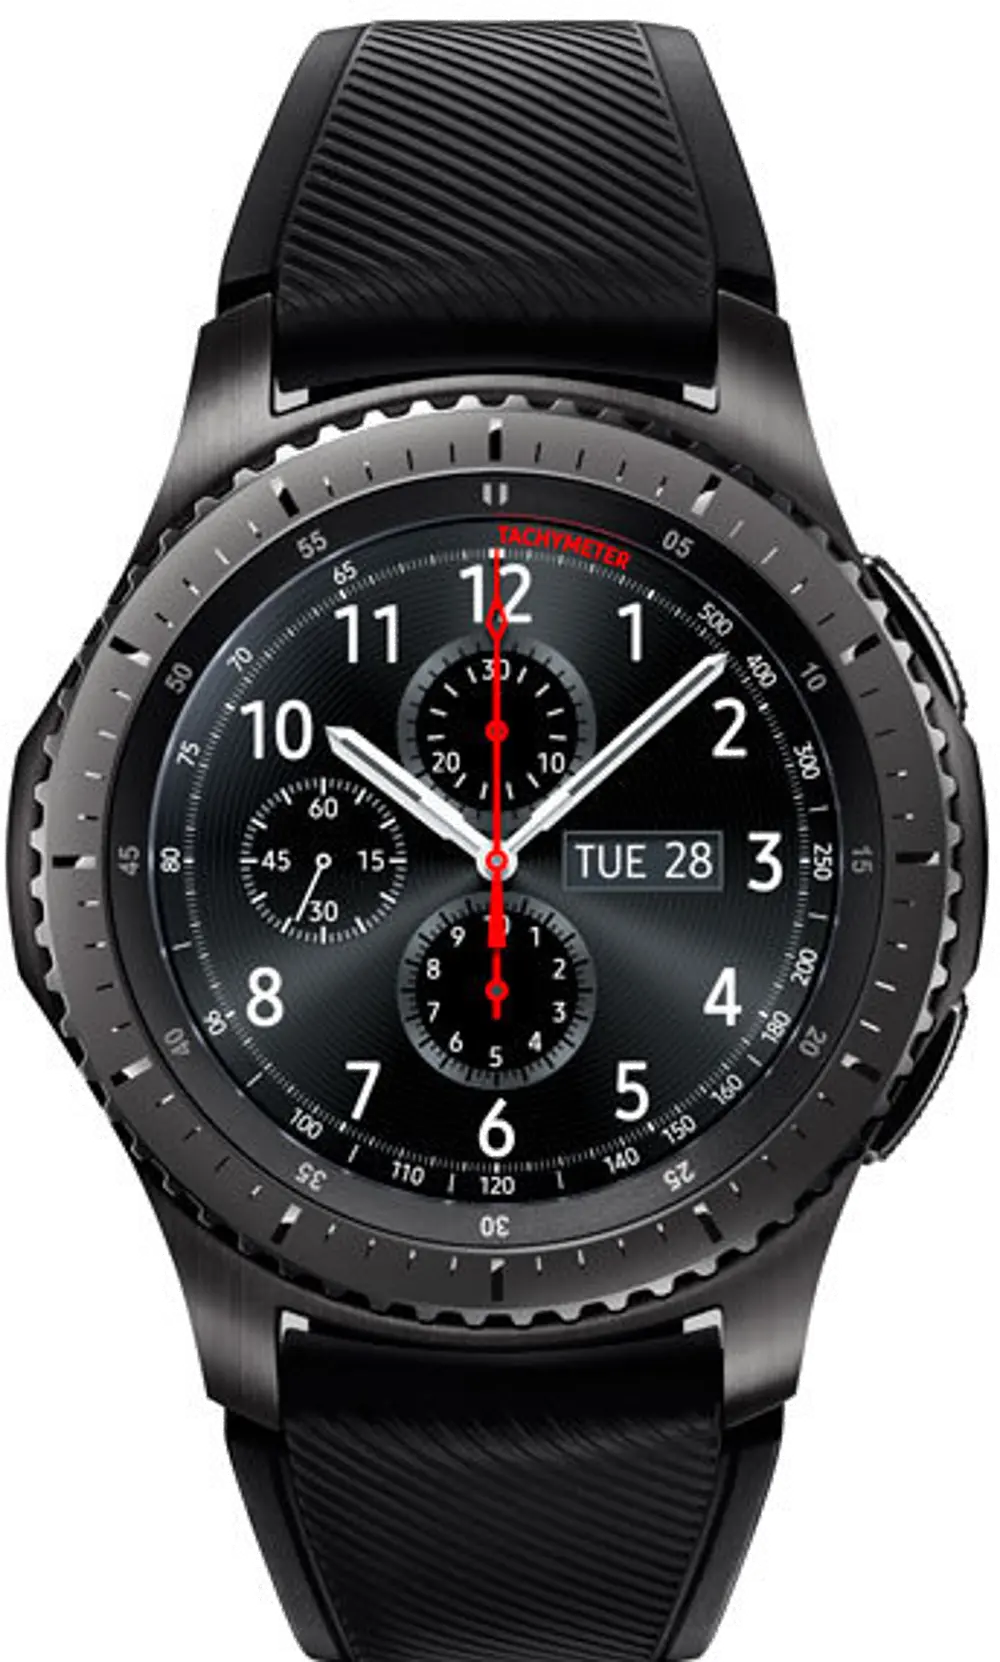 SM-R760NDAAXAR Samsung Gear S3 Frontier Smart Watch-1